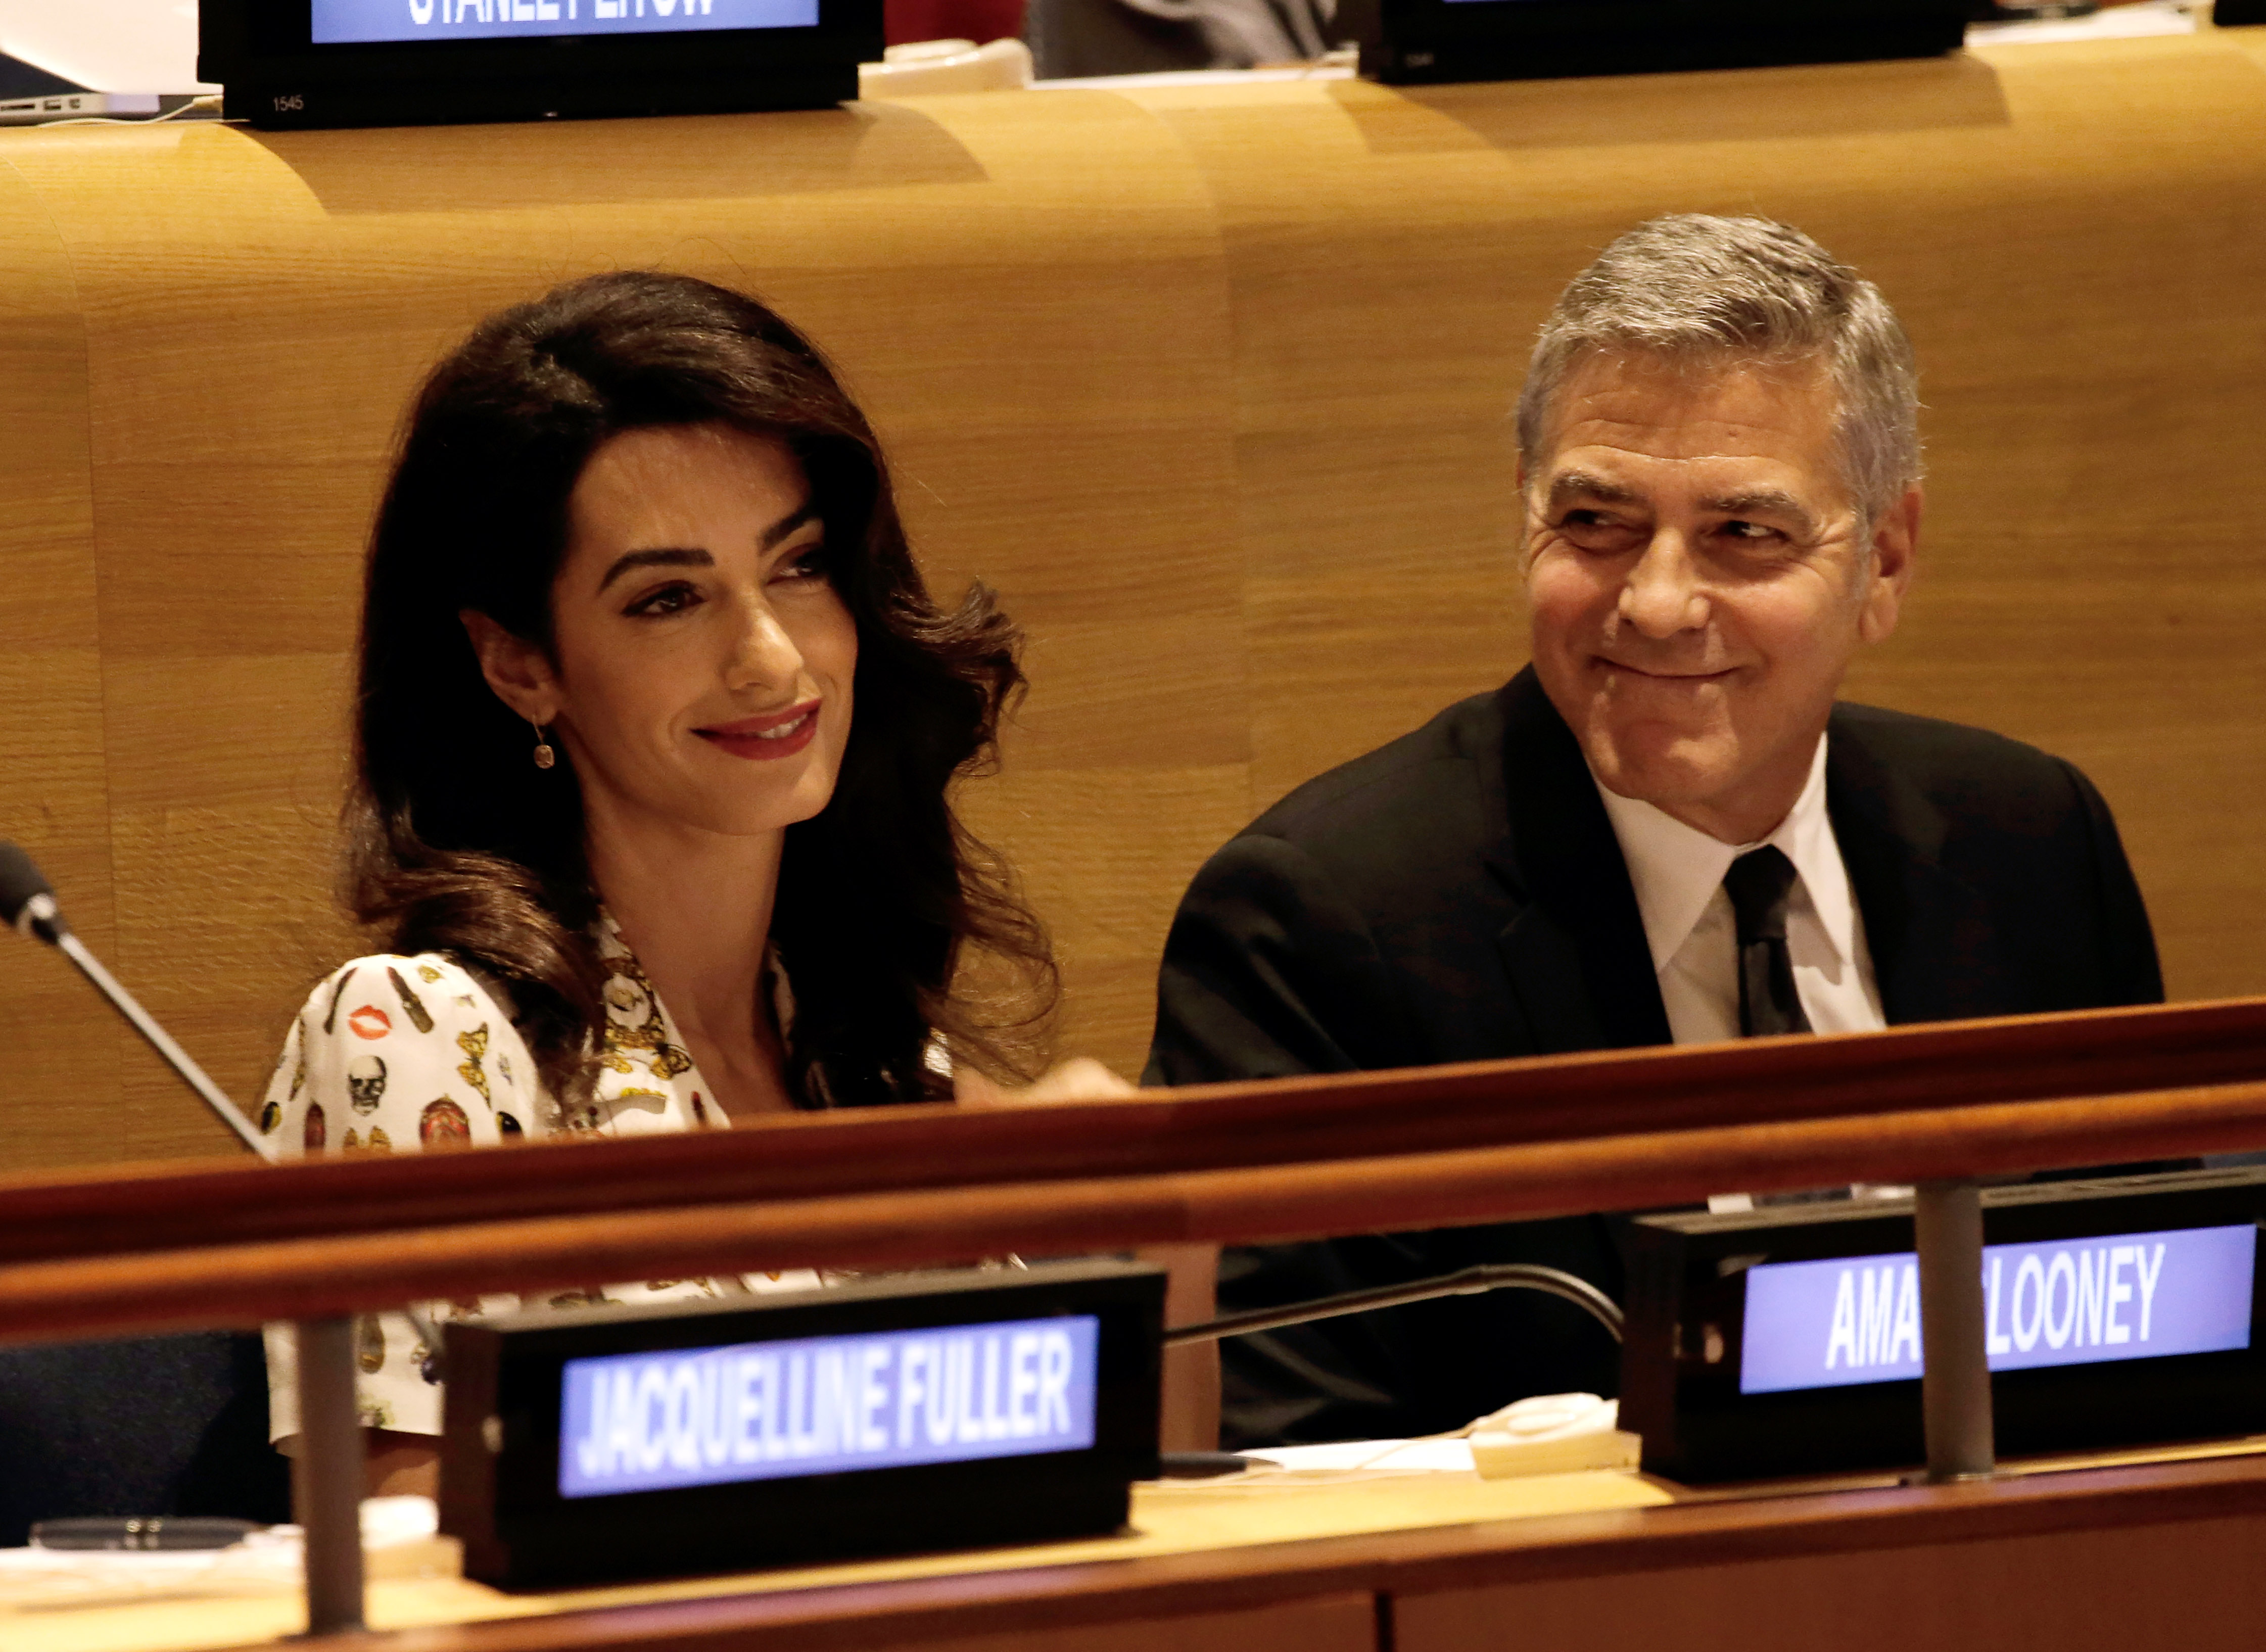 Schauspieler George Clooney und Ehefrau Amal Clooney bei der Generalversammlung der Vereinten Nationen am 20. September 2016 in New York | Quelle: Getty Images